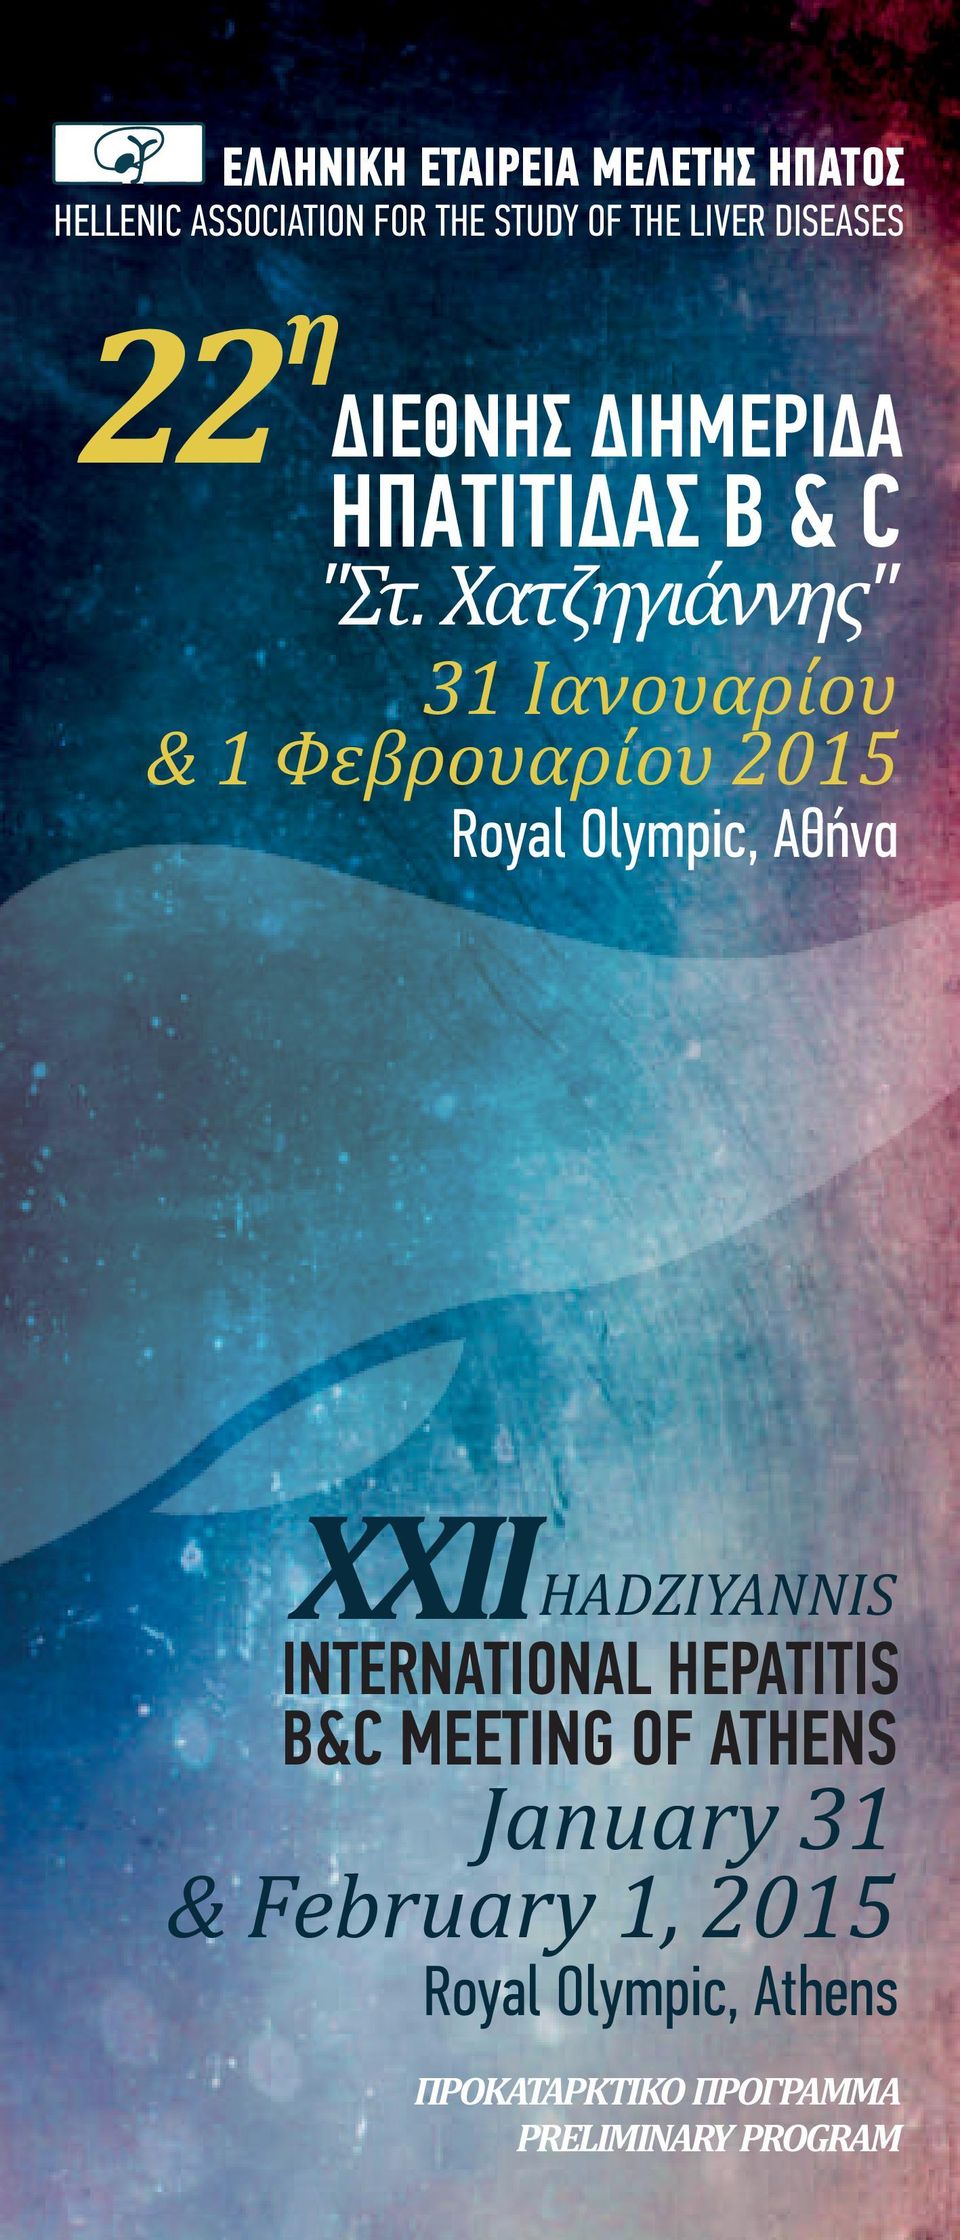 Χατζηγιάννης" 31 Ιανουαρίου & 1 Φεβρουαρίου 2015 Royal Olympic, Αθήνα 22 ΧΧΙΙHADZIYANNIS